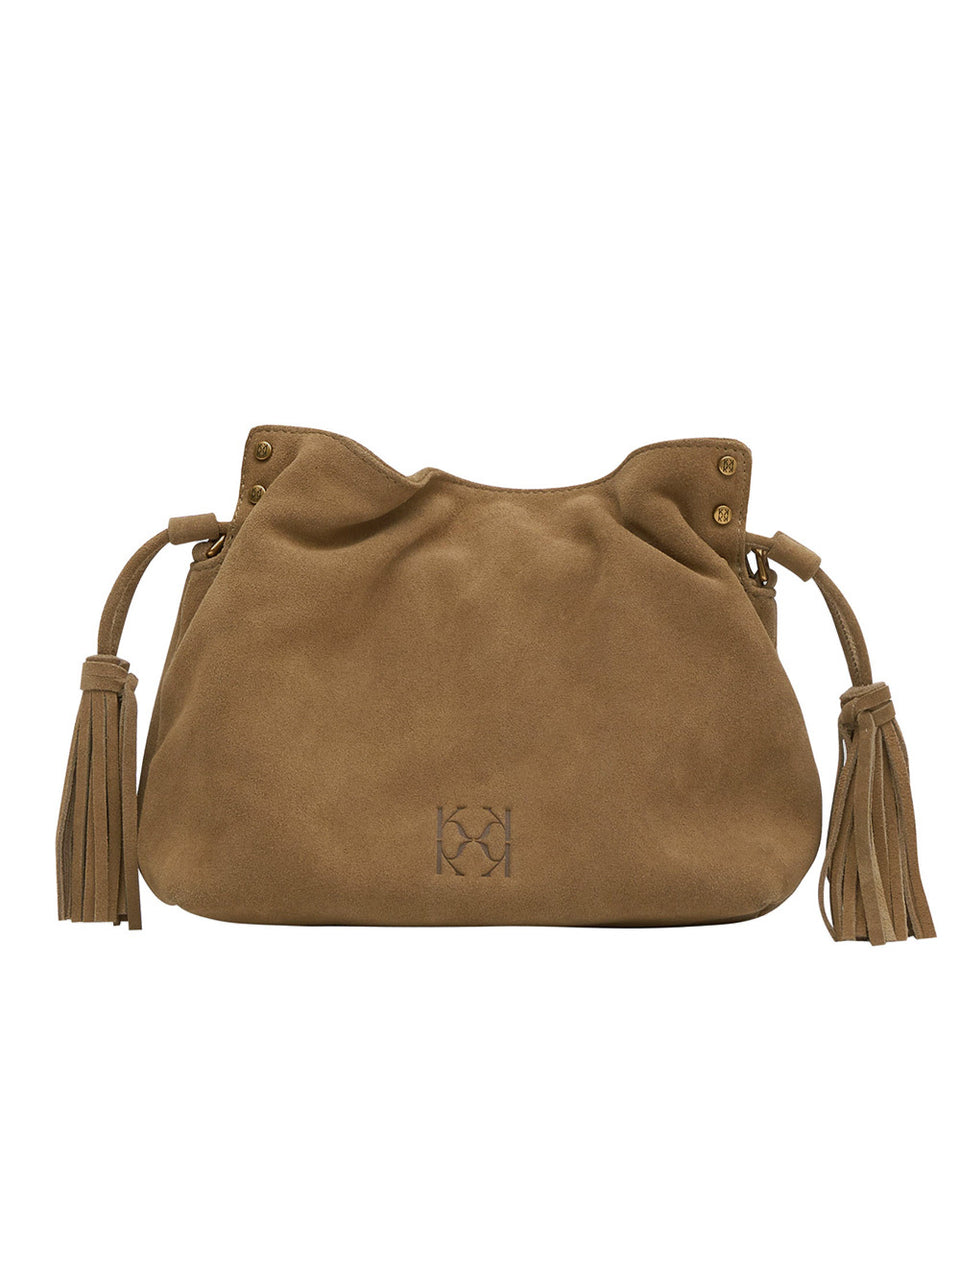 KIVARI Rosie Crossbody Bag in brown